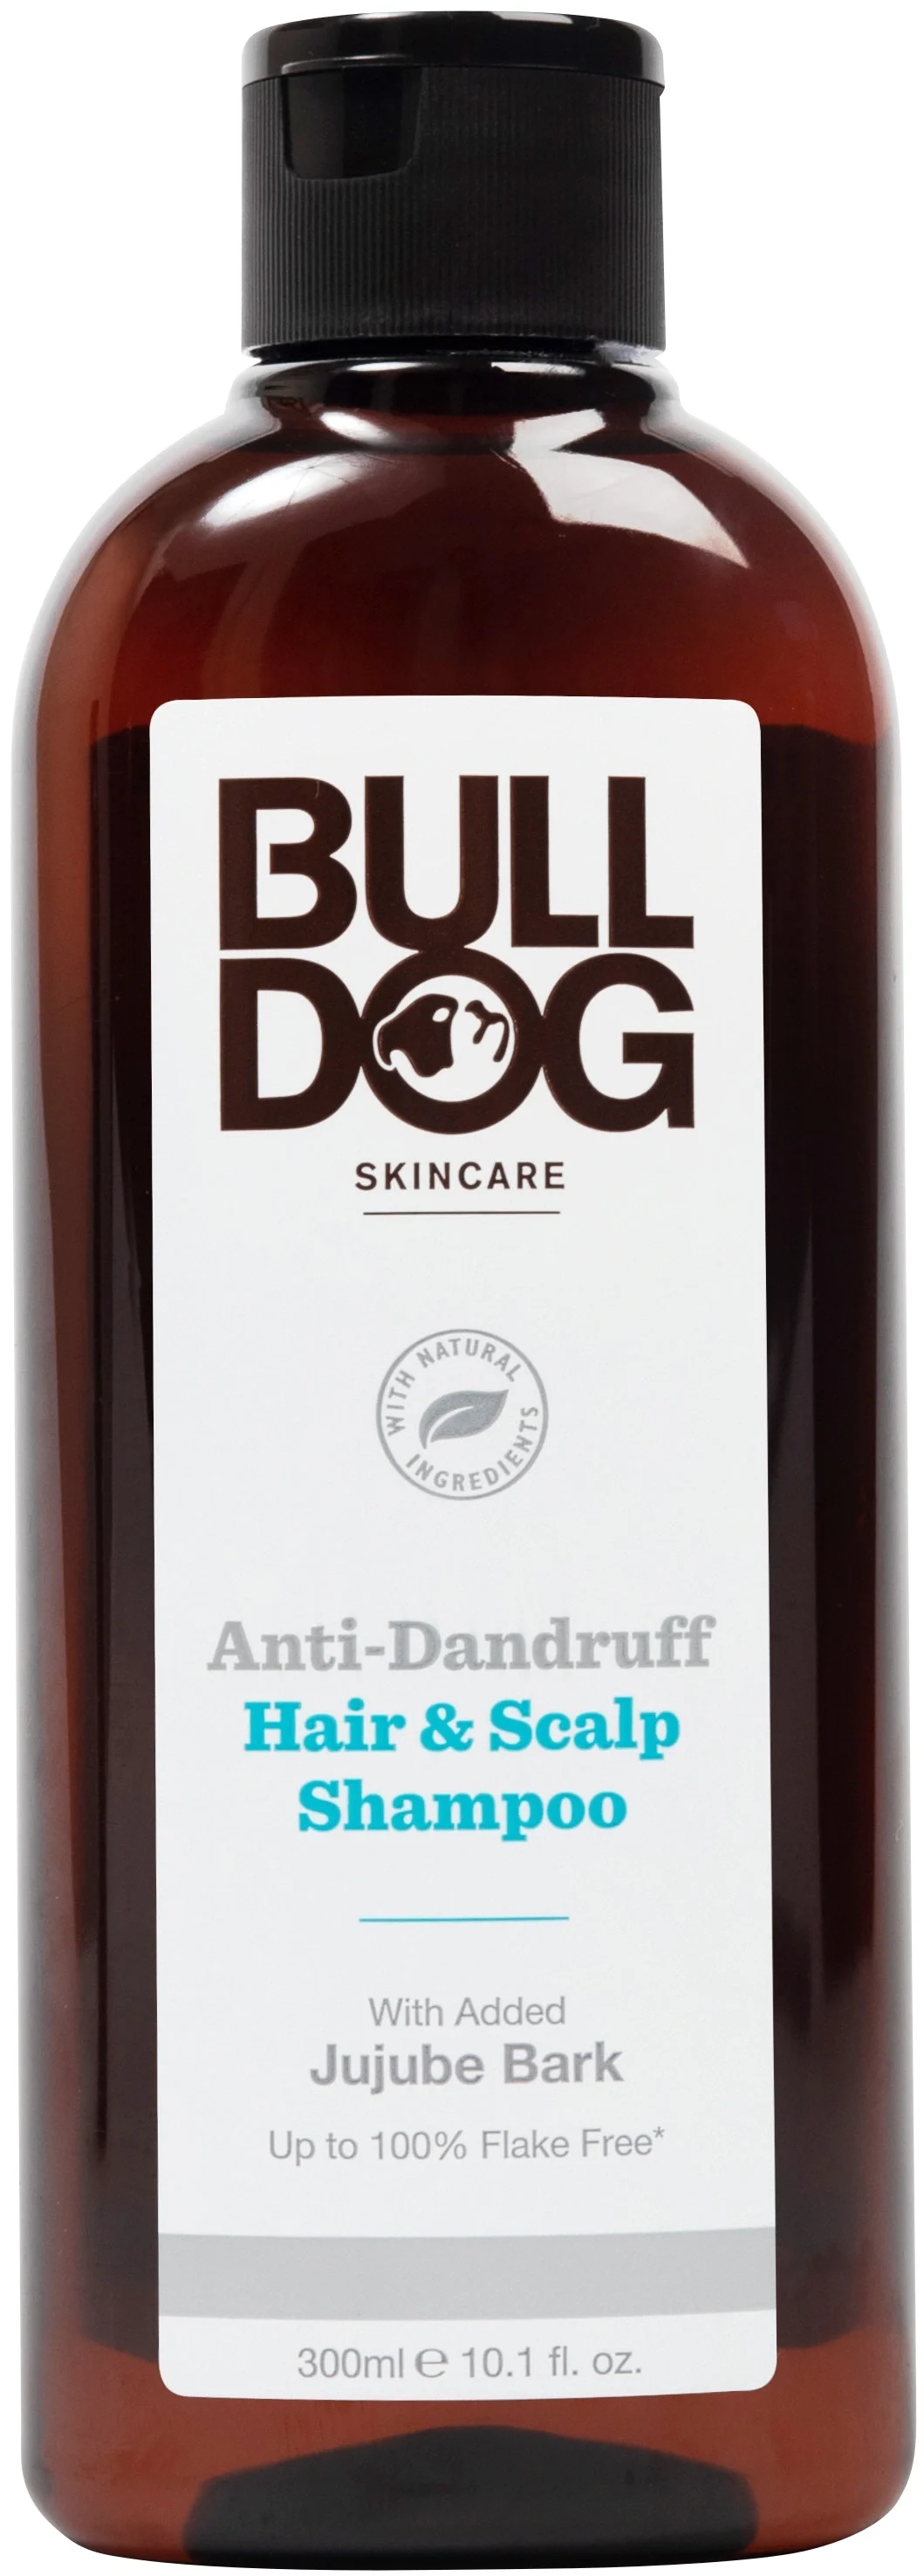 Bulldog Anti-Dandruff Shampoo, 300 ml